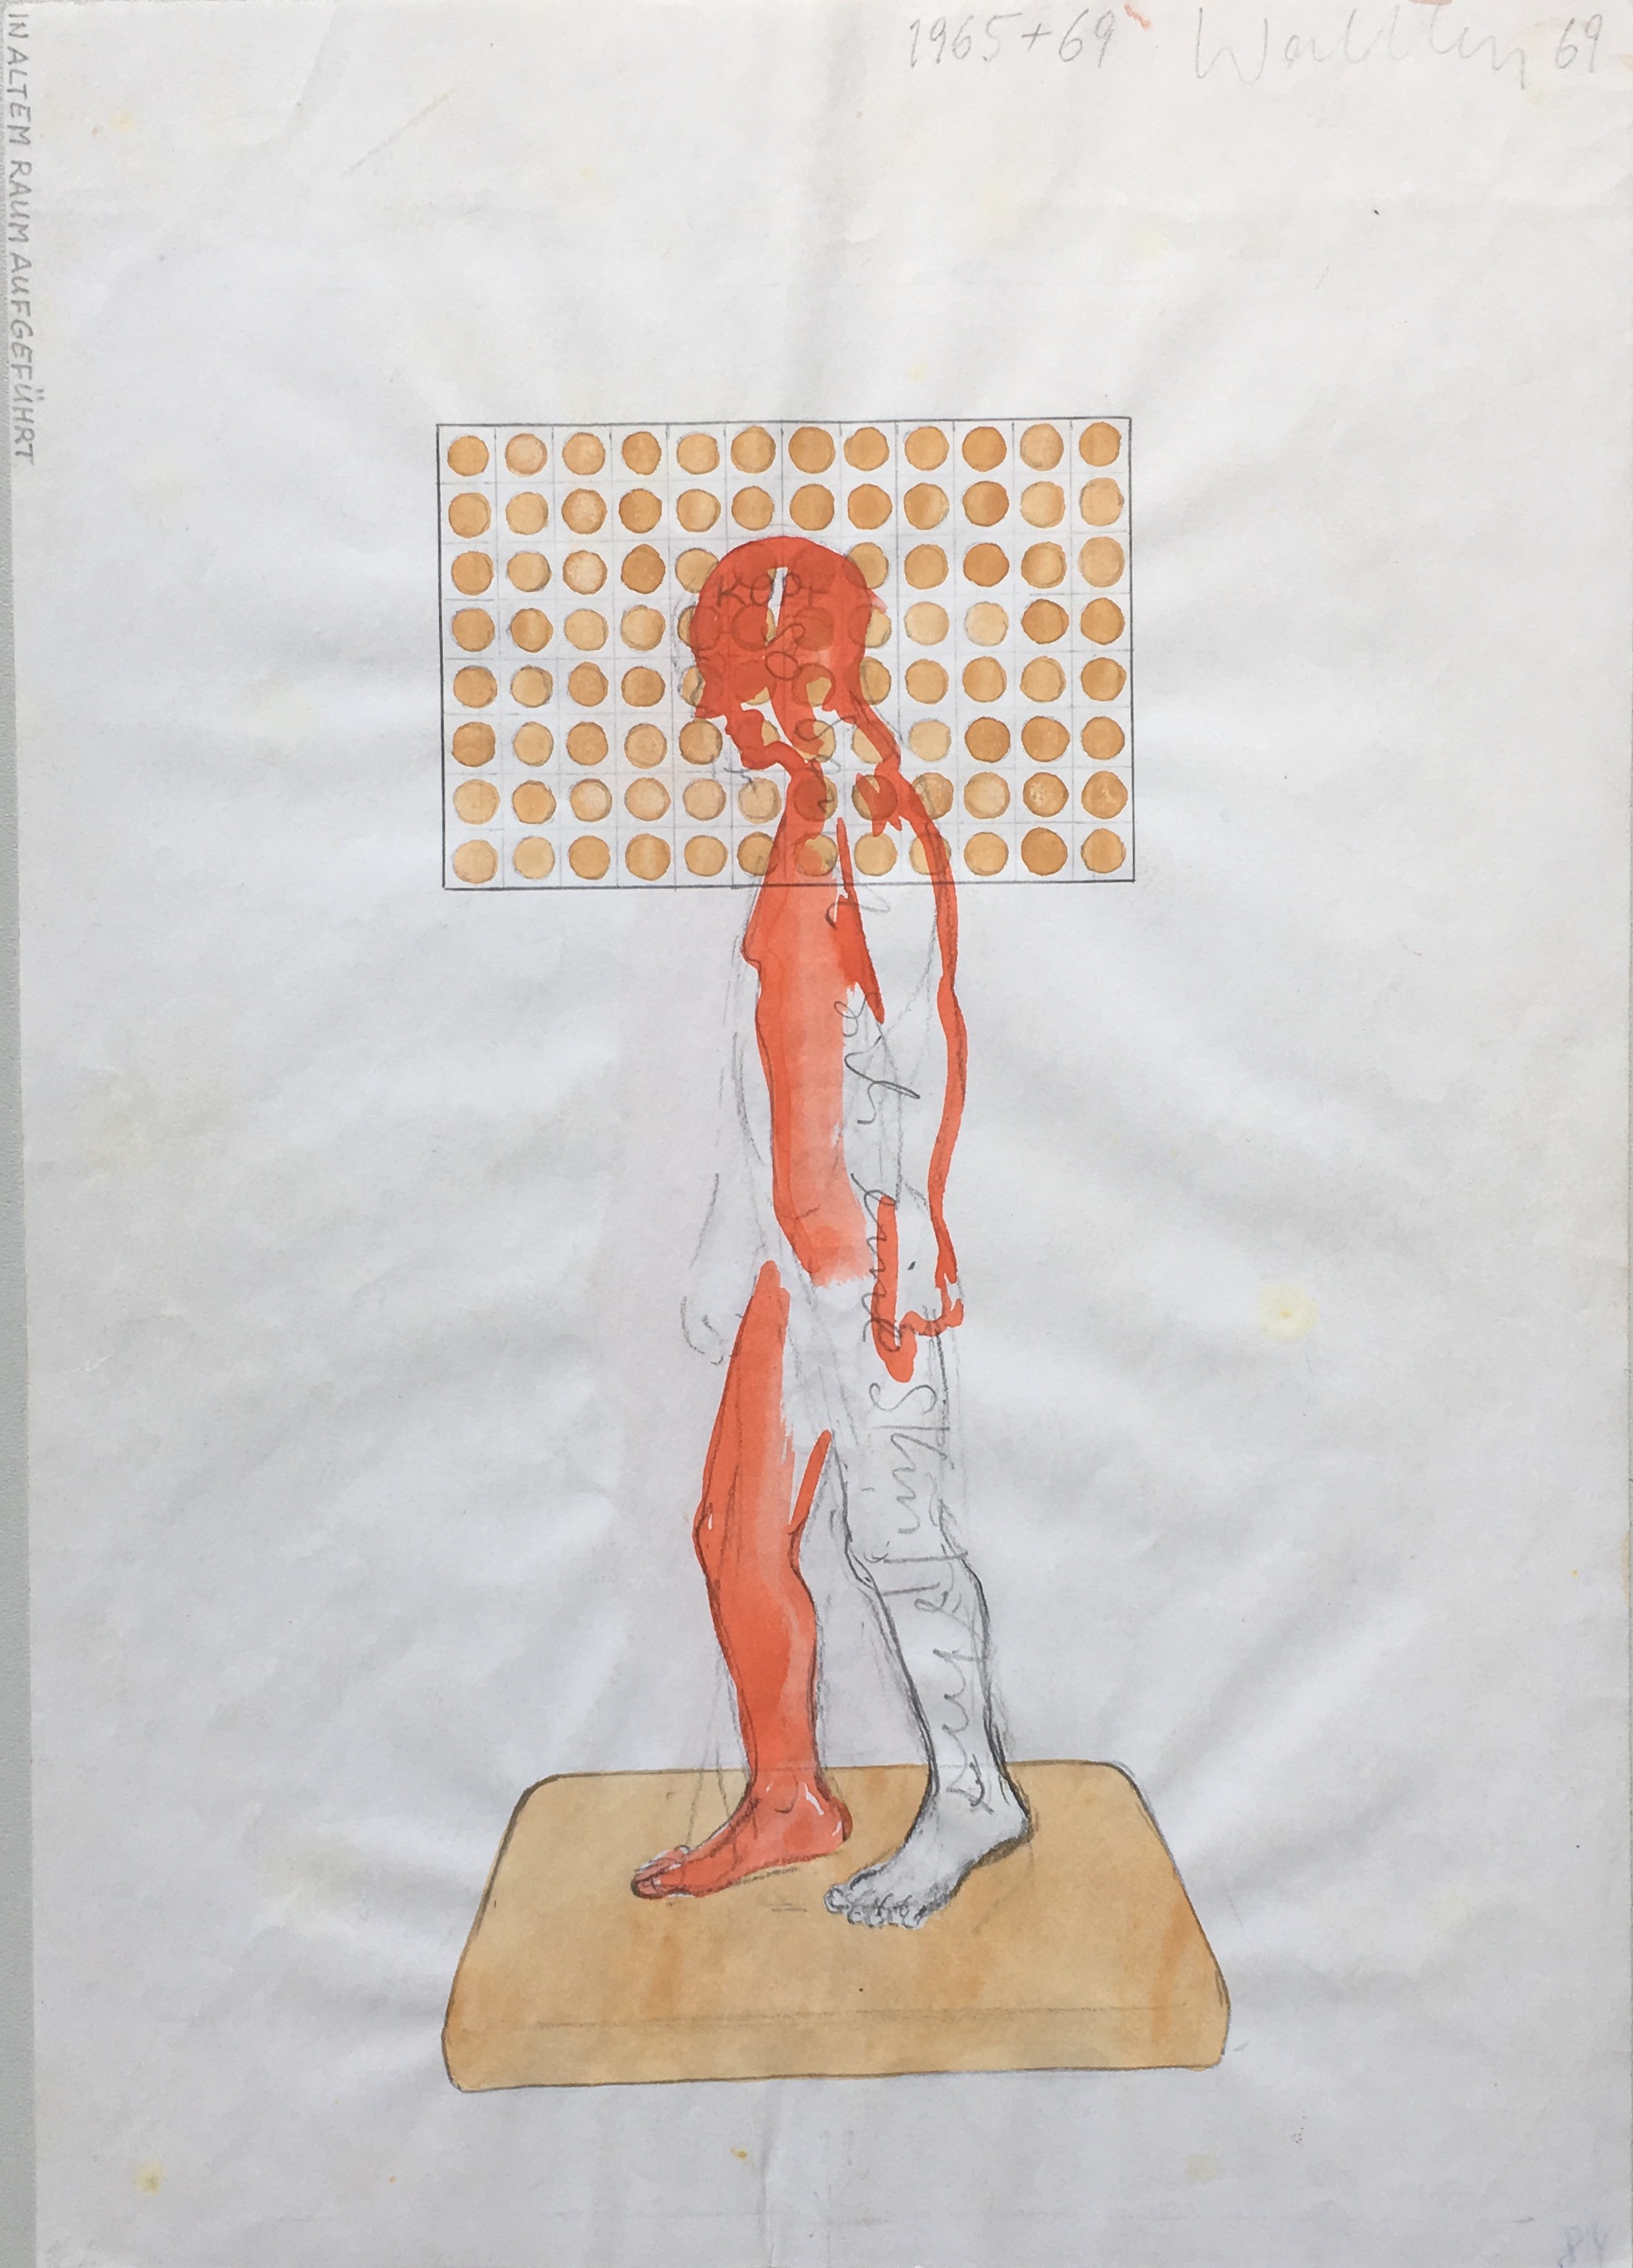 o.T. (ich bin die Skulptur)  - drawing  - 1965/69 - 29,5 x 21 cm -  copies